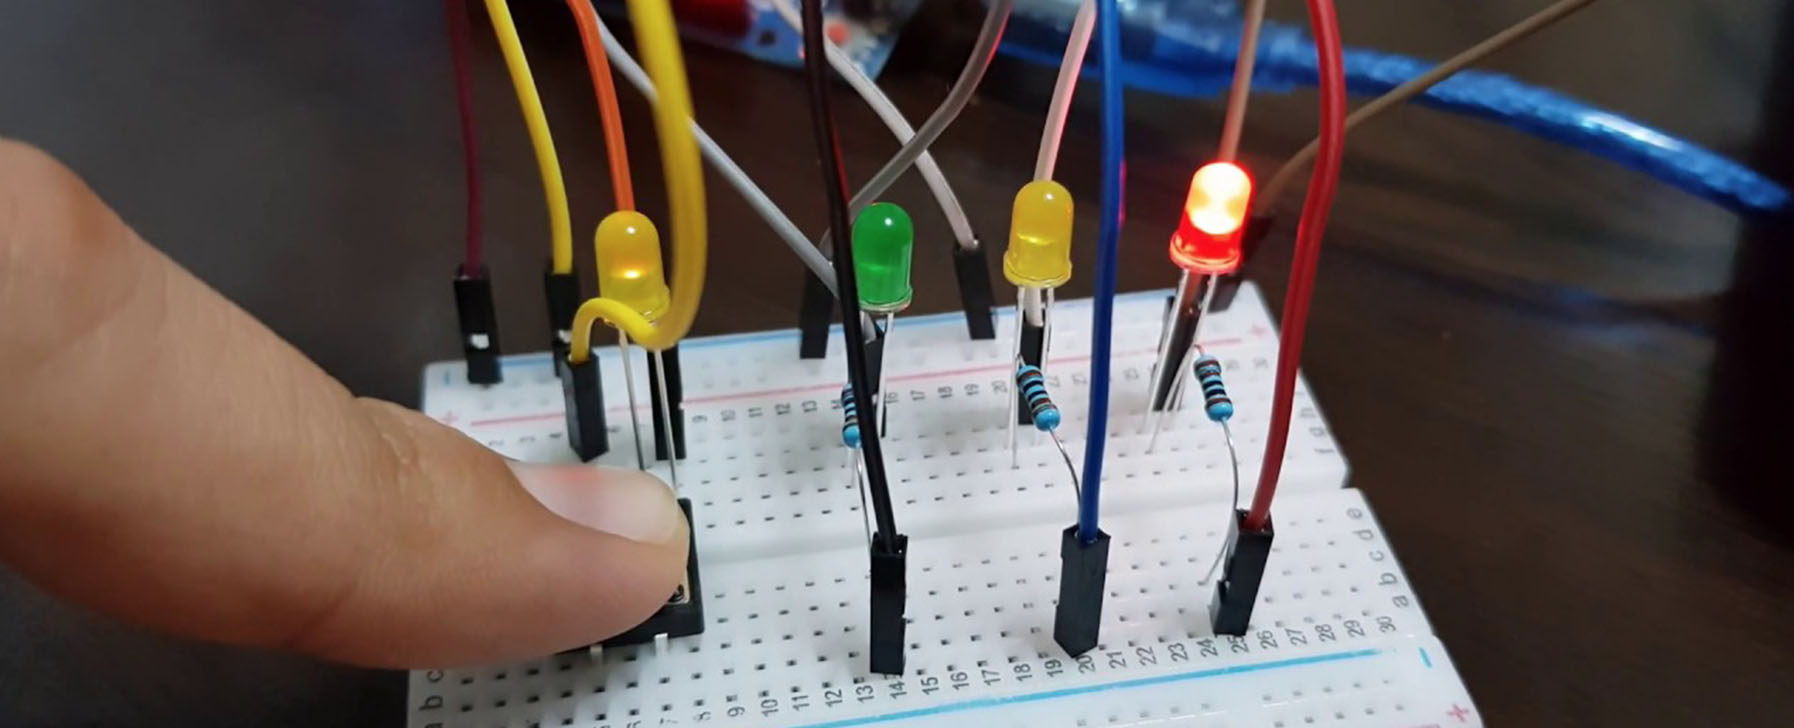 Construcción de una escultura LED controlada por arduino